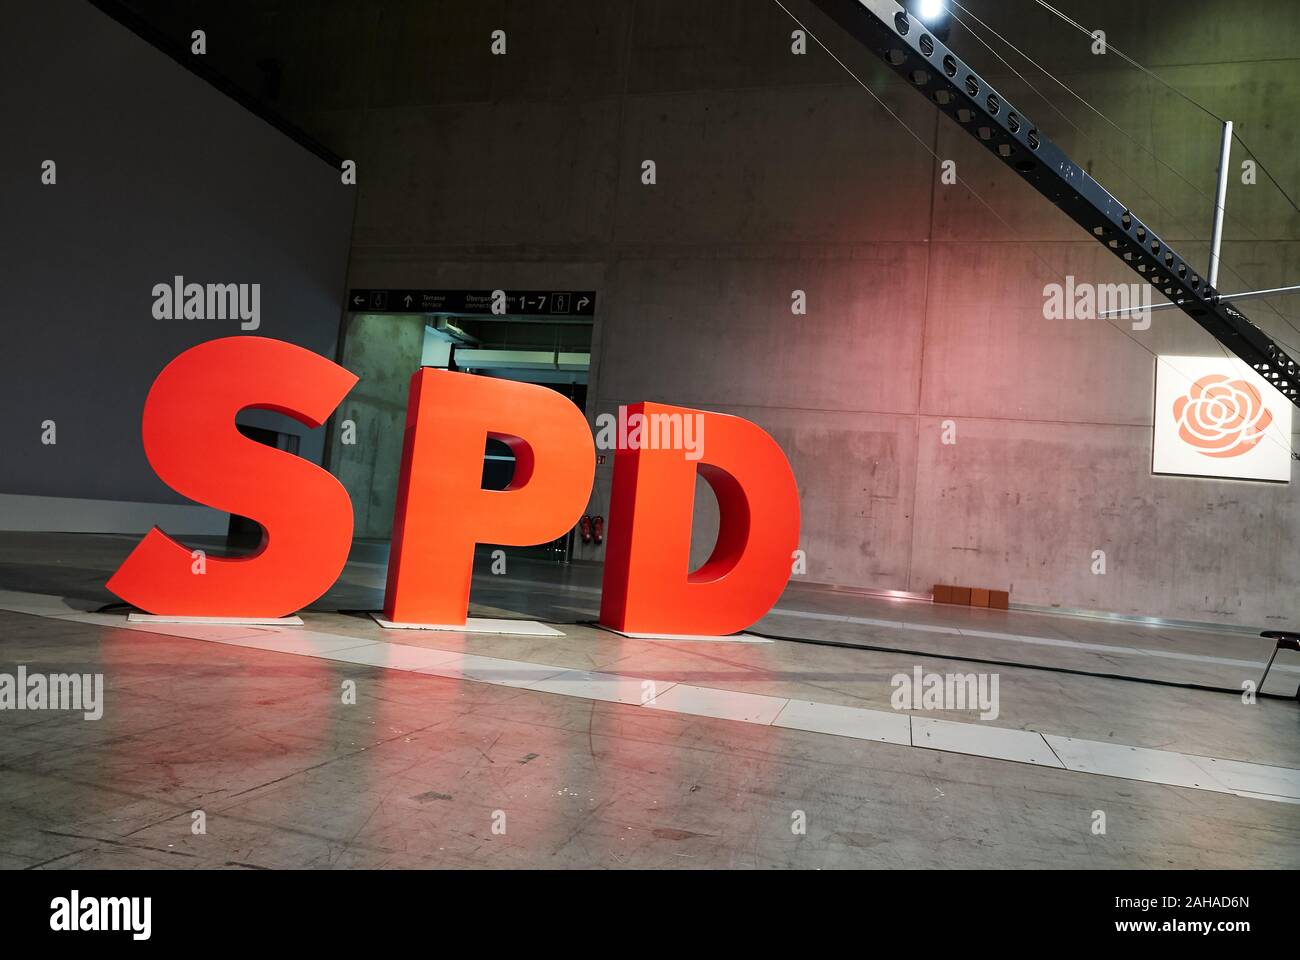 06.12.2019, Berlin, Berlin, Deutschland - Das Logo der Sozialdemokratischen Partei Deutschlands SPD als Person große dreidimensionale Buchstaben. Für die federa Stockfoto